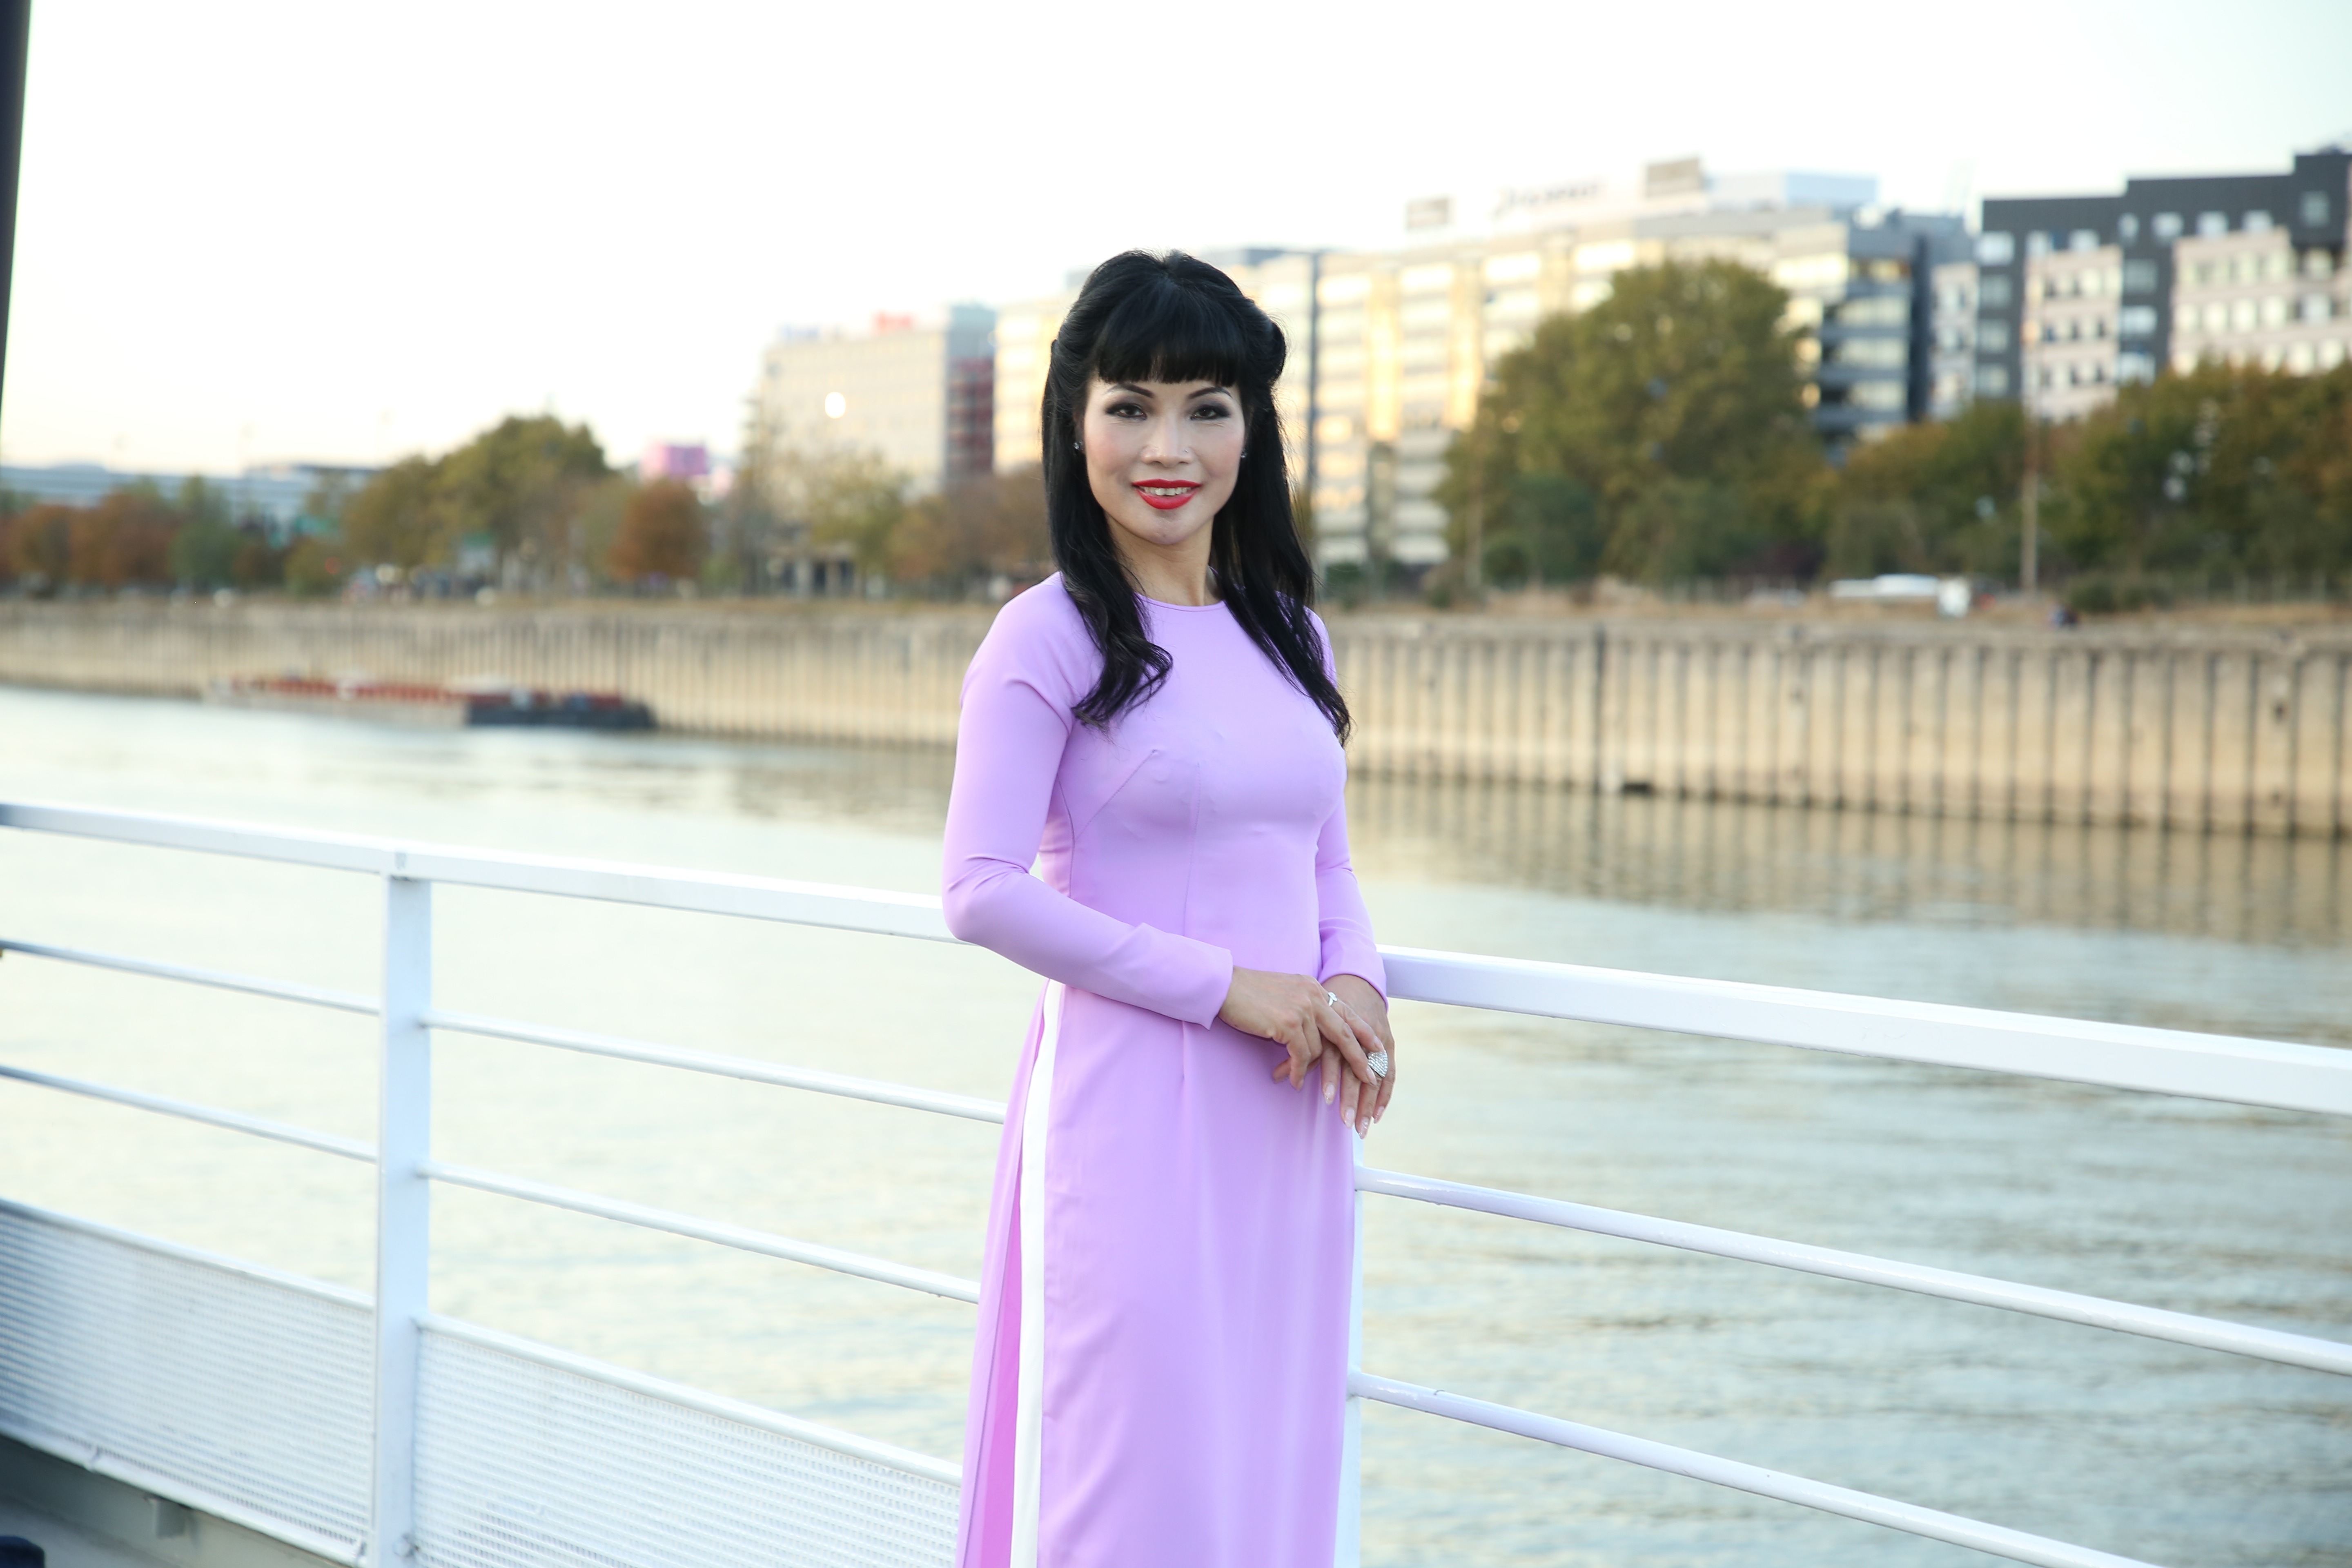 Trương Thị Hồng Thuận – Á hậu 1 của cuộc thi Hoa hậu Áo Dài Toàn cầu 2018: Nữ doanh nhân thành đạt luôn có nghị lực vươn lên trong cuộc sống